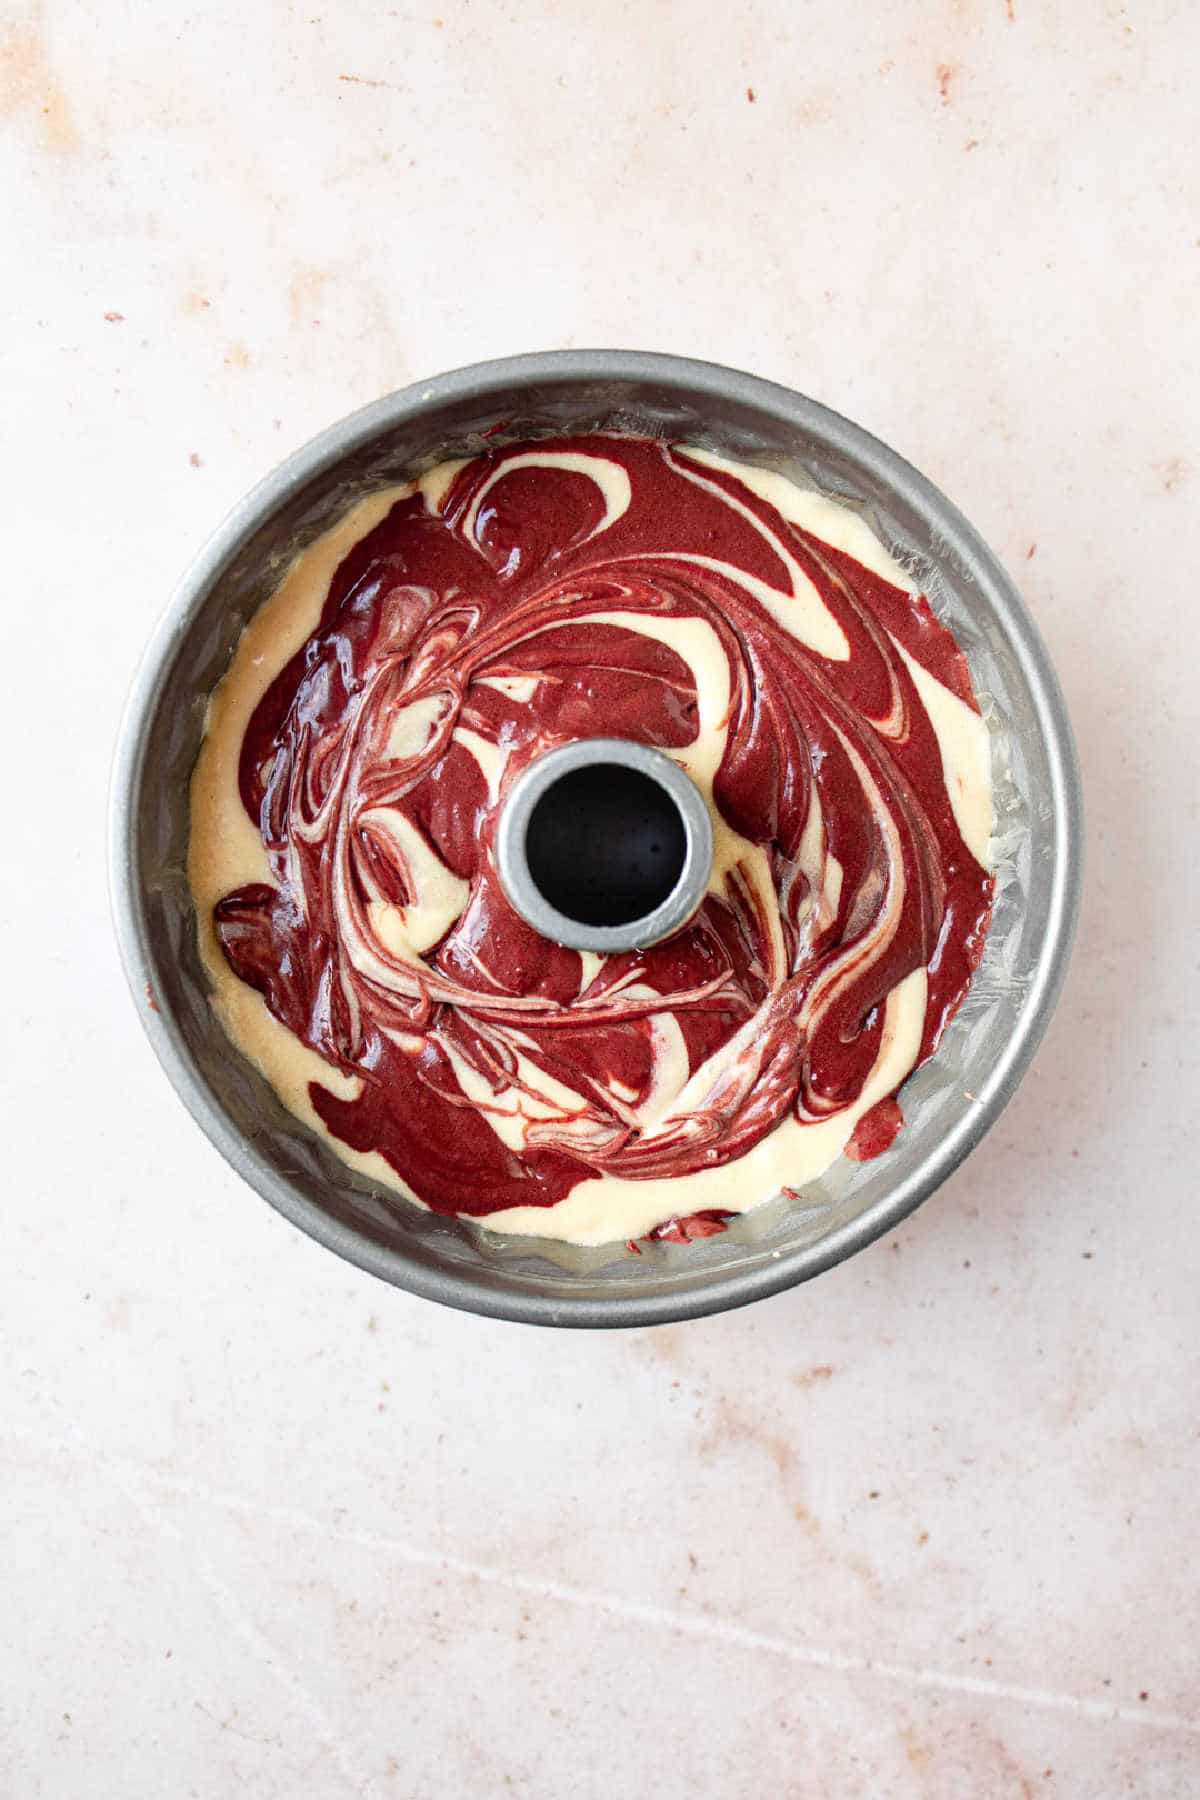 Red velvet marble cake batter in a bundt pan.